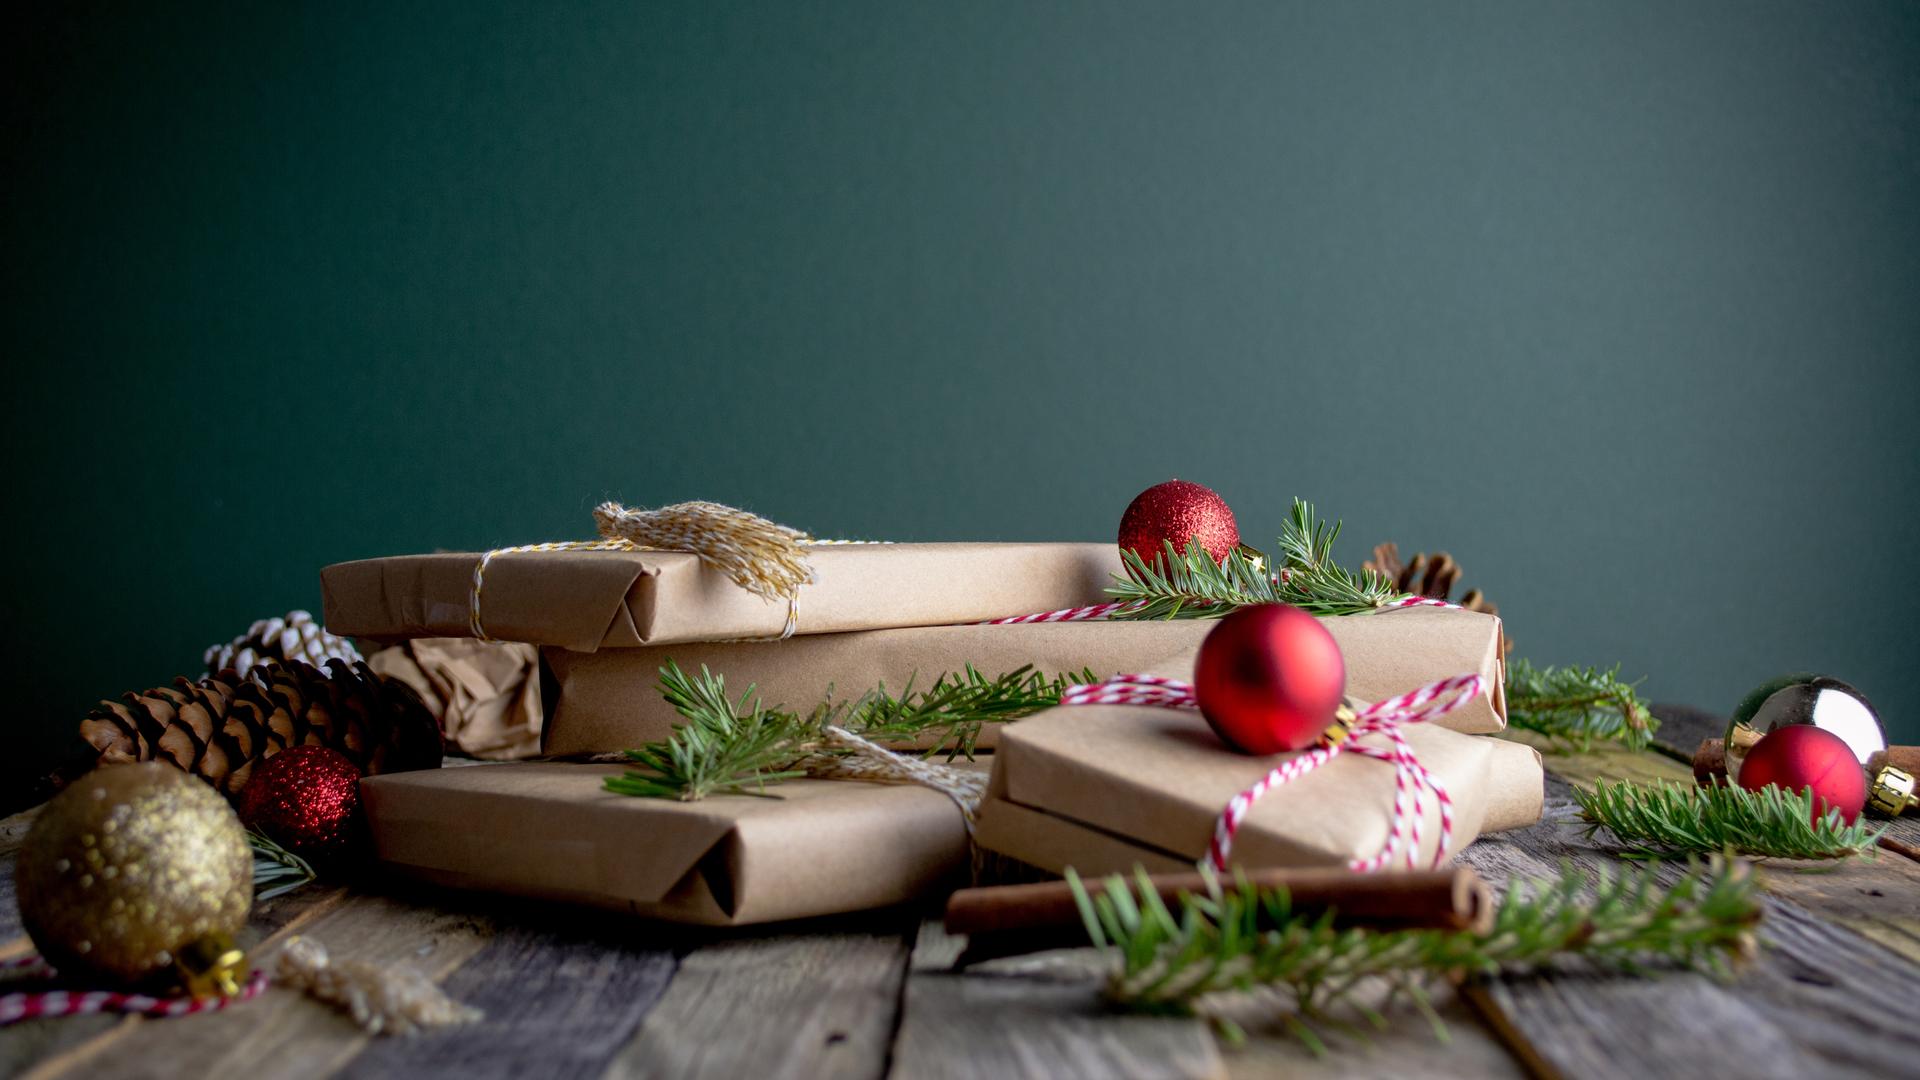 Verpackte Geschenke liegen vro einem grünen Hintergrun auf dem Holztisch.